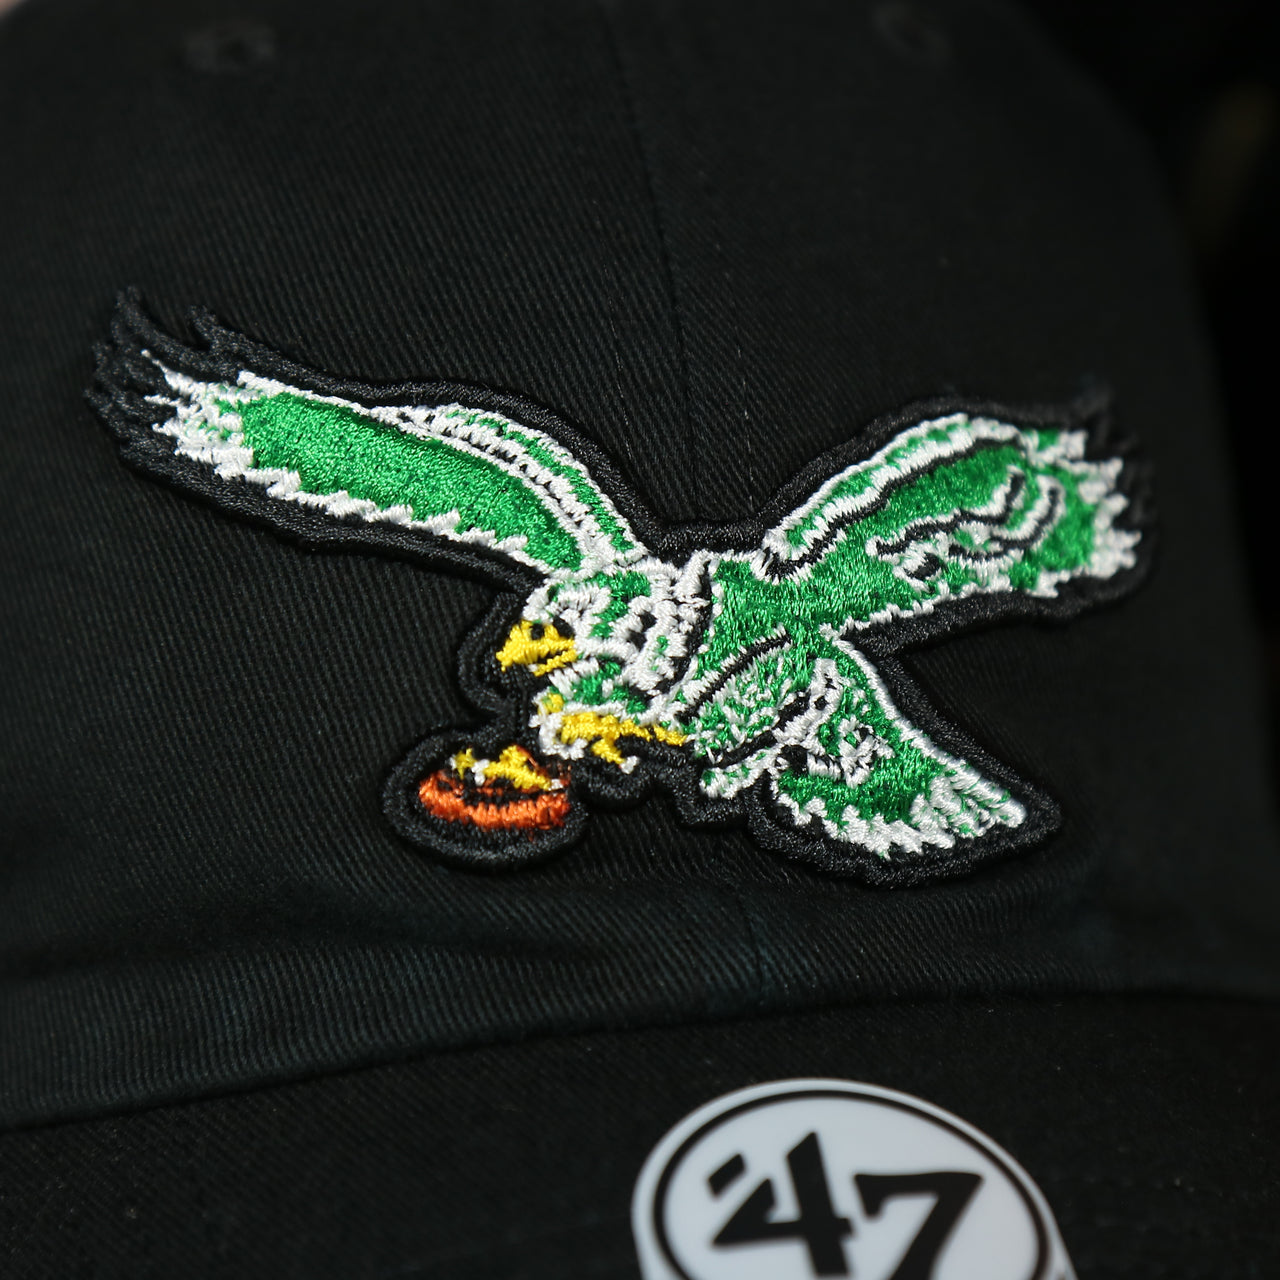 eagles logo on the Throwback Philadelphia Eagles Black Adjustable Dad Hat